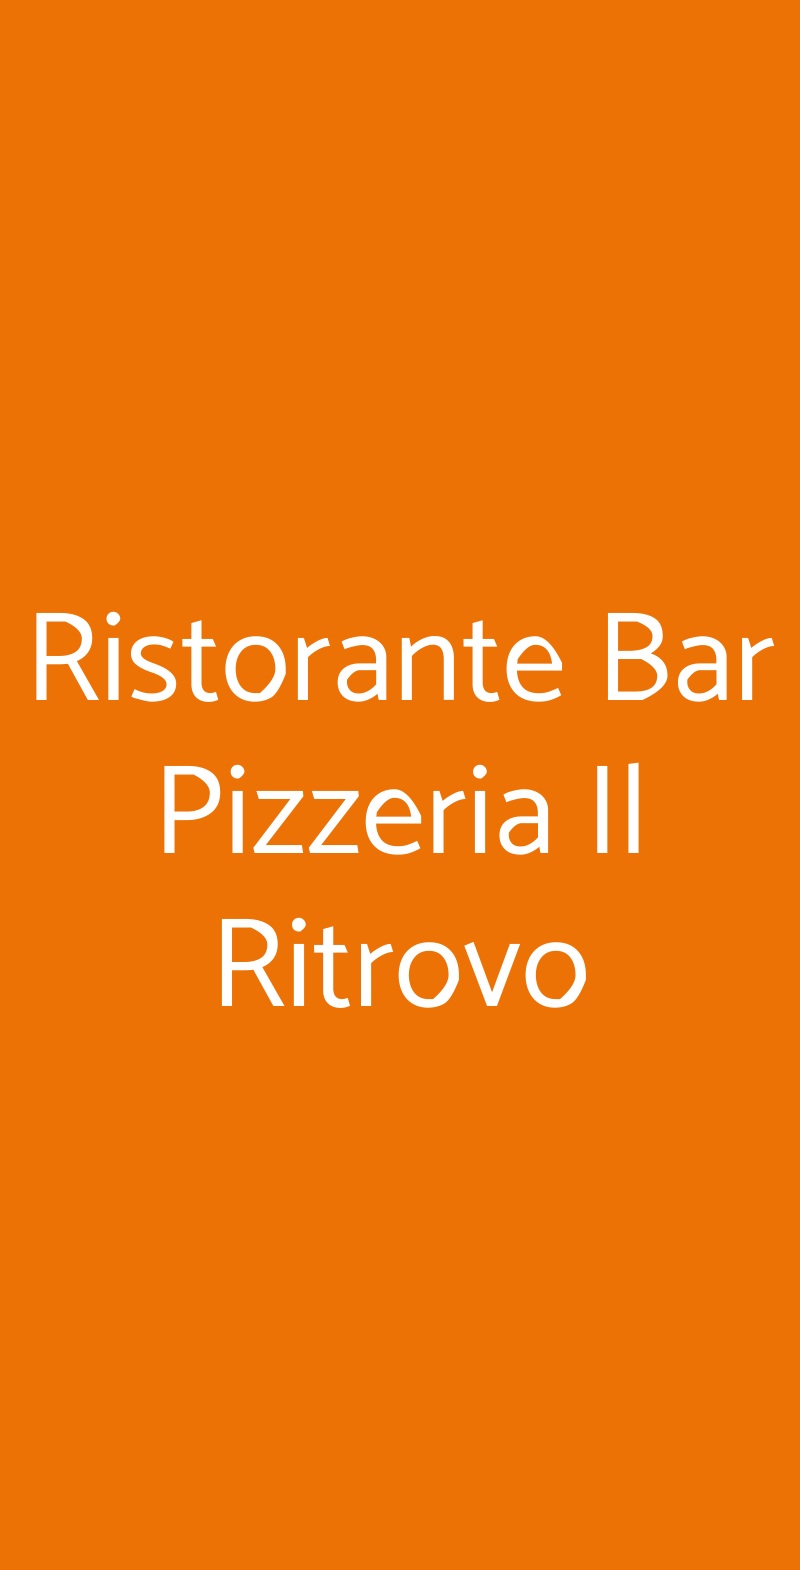 Ristorante Bar Pizzeria Il Ritrovo Volterra menù 1 pagina